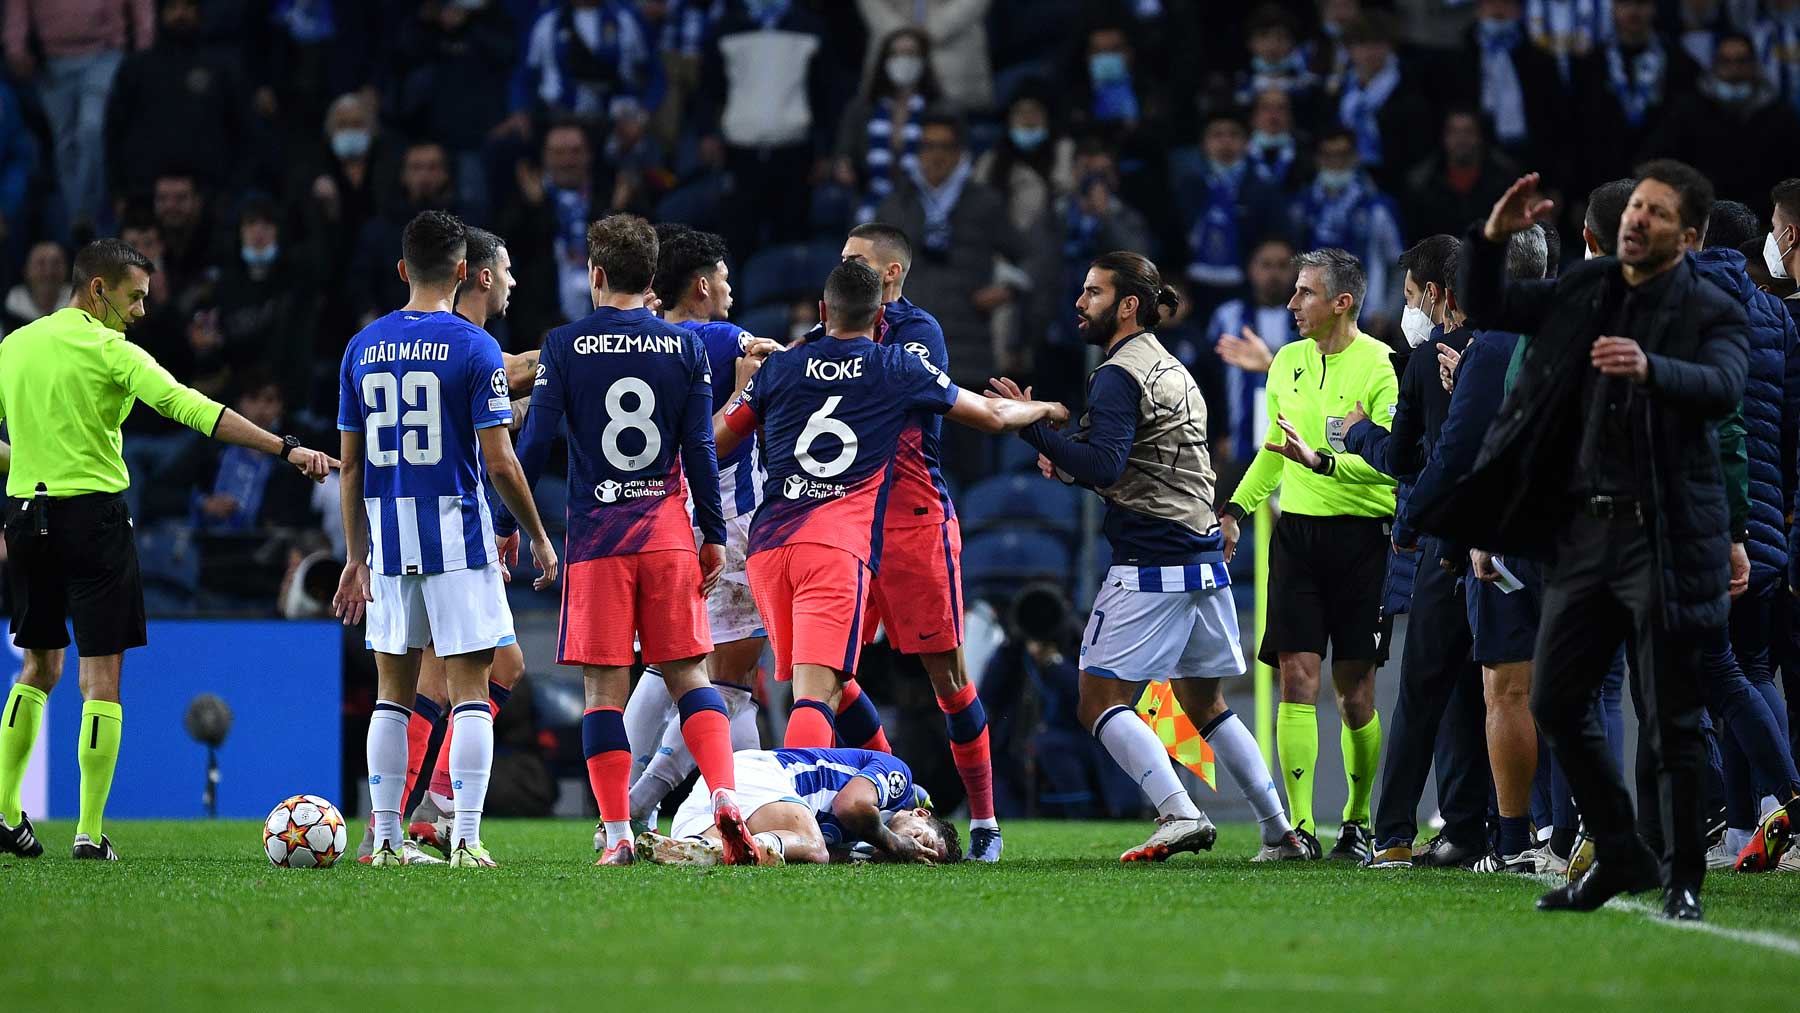 Uno de los momentos de tensión entre el Atlético y el Oporto en Champions League (Getty)